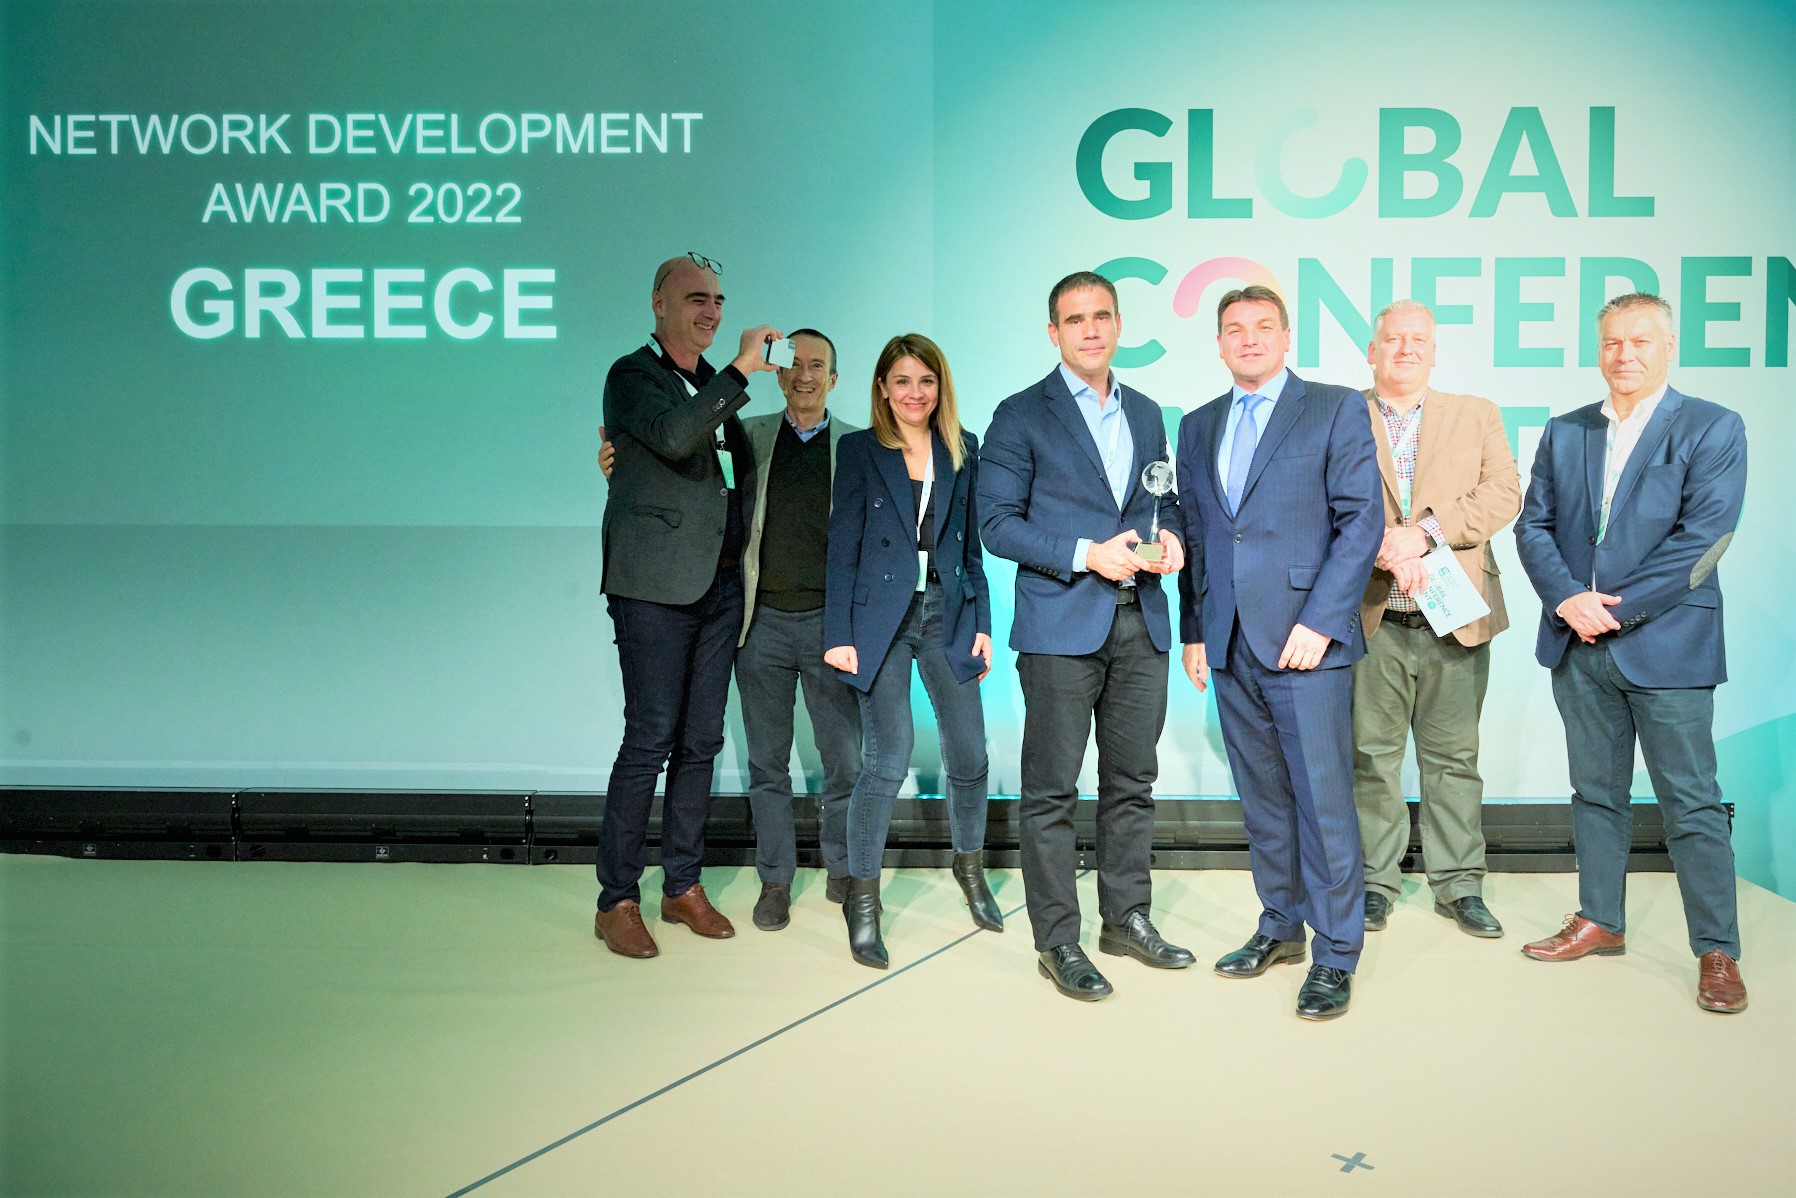 Η Kinsen - Europcar Greece κατέκτησε το βραβείο Network Development Award 2022